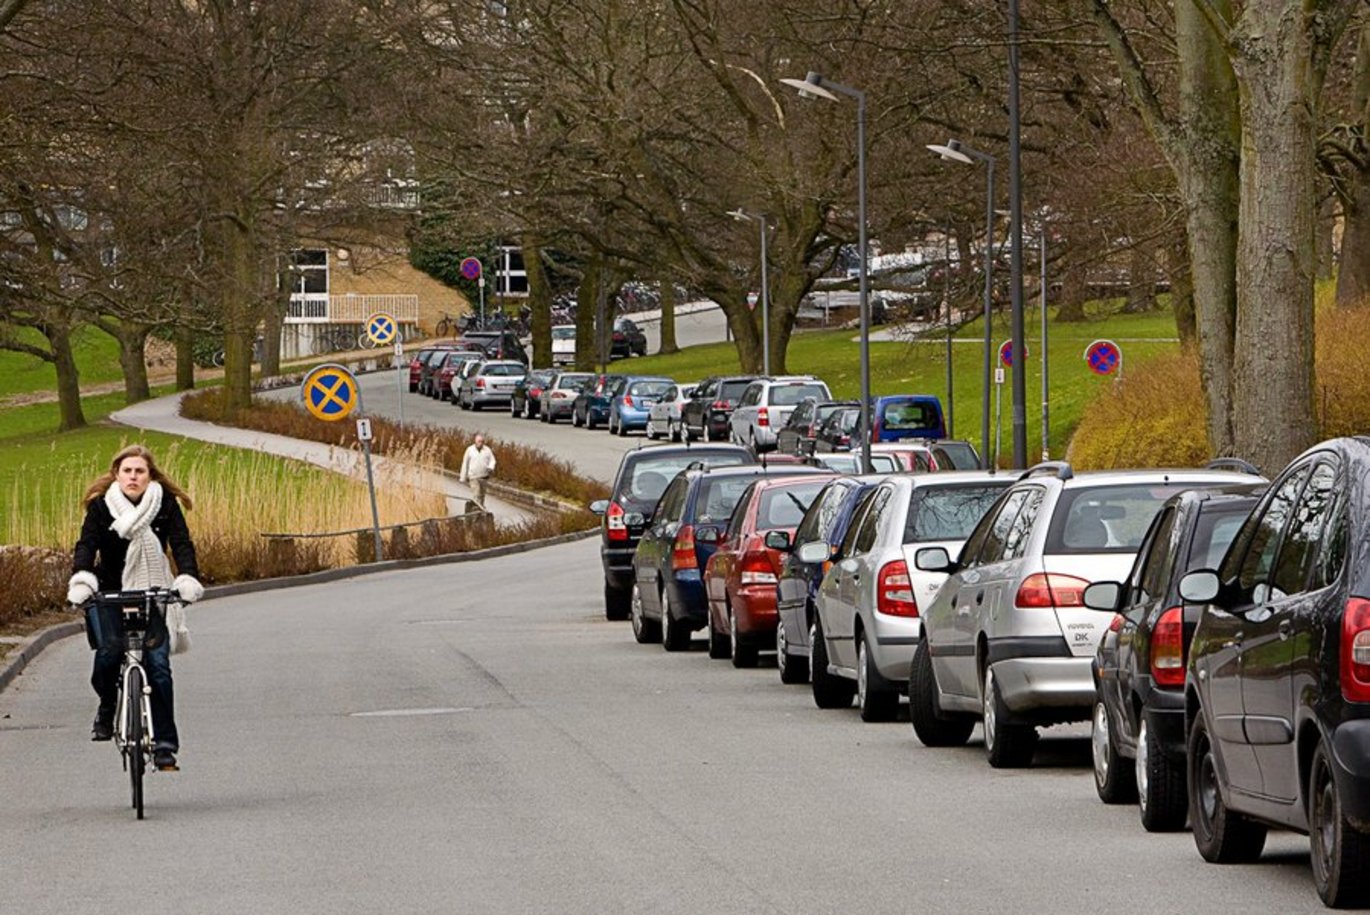 Man kan maksimalt parkere fire timer langs vejene i universitetsparken mellem kl. 7 og kl. 17. Foto: Lars Kruse/AU Kommunikation.